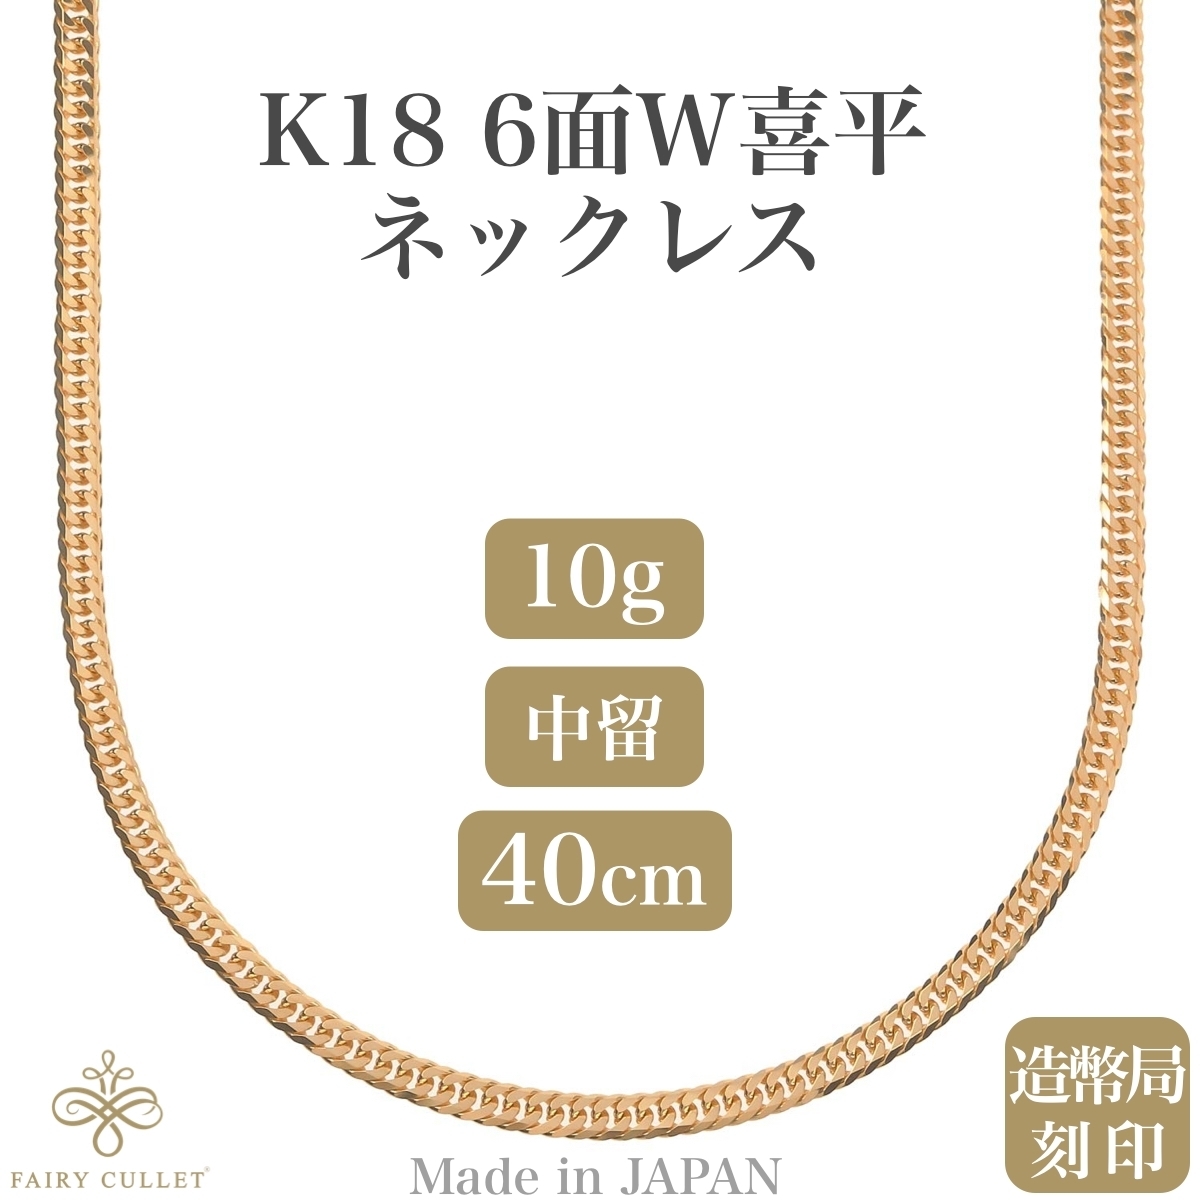 絶品】 K18 18金ネックレス 6面Wチェーン 中留め 40cm 約10g 日本製